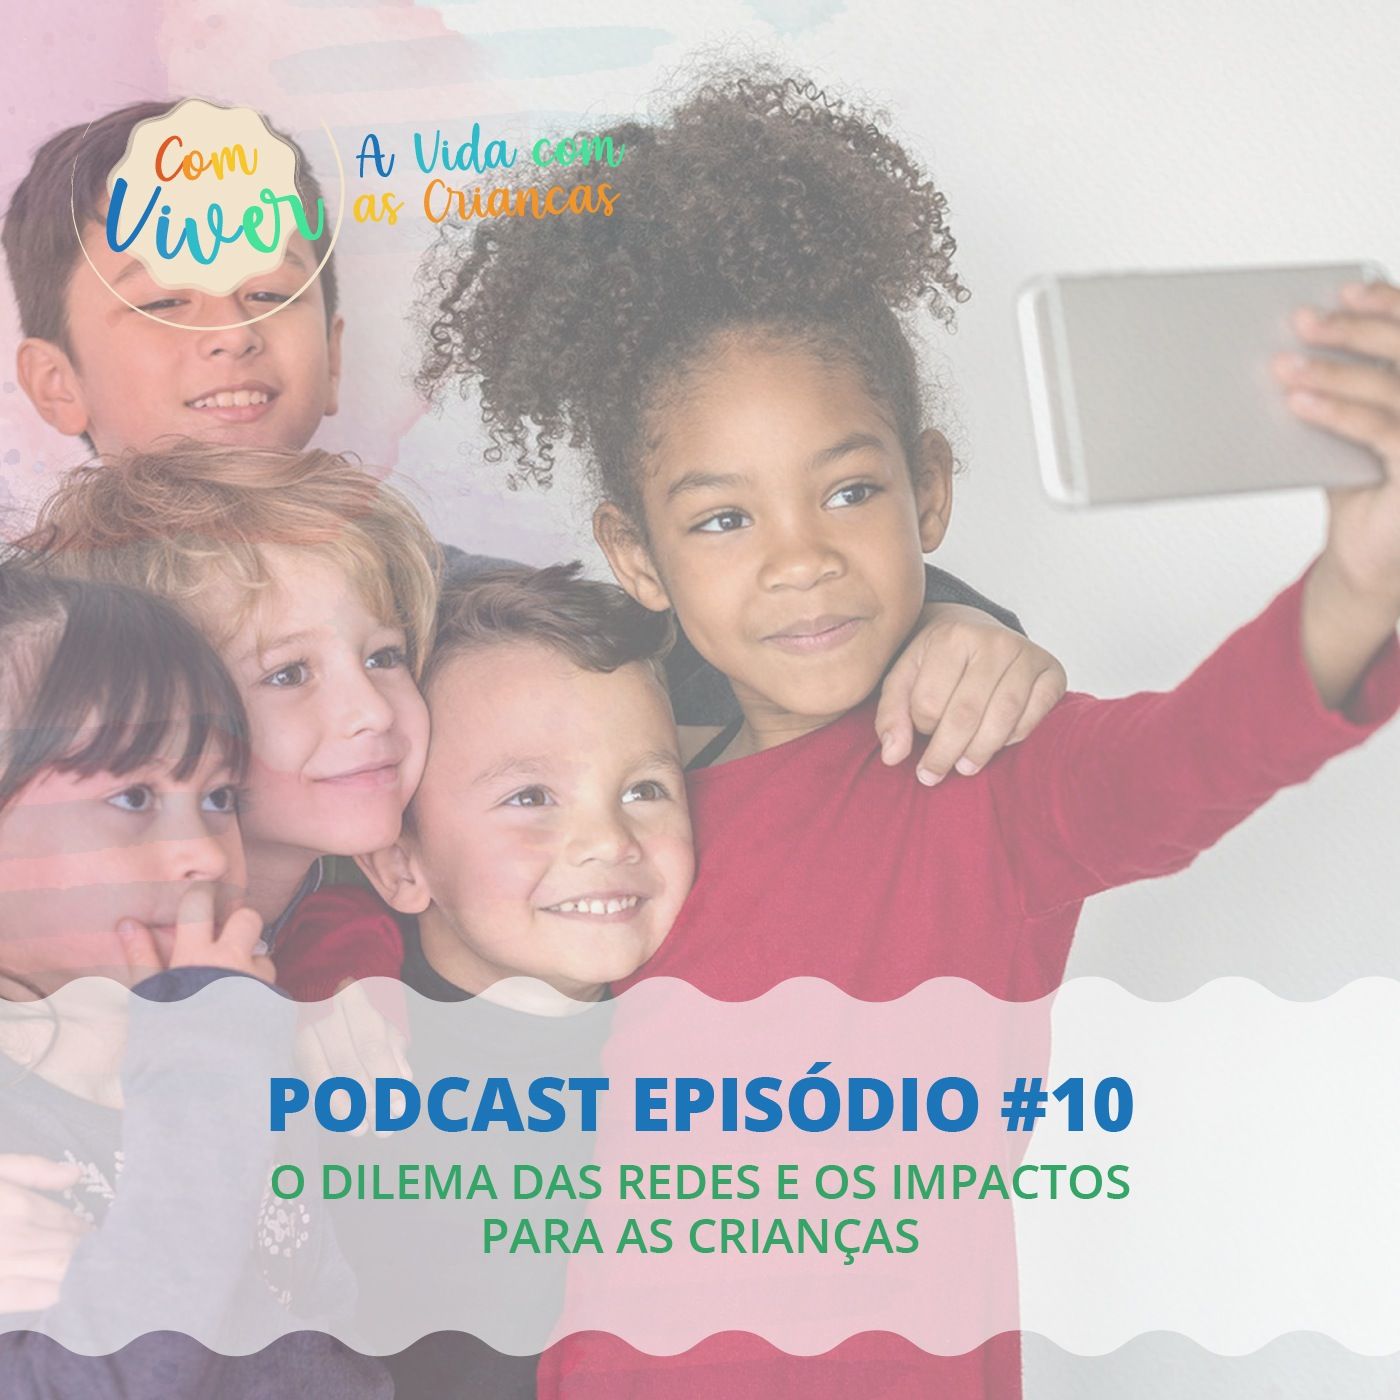 Com Viver #10 - O dilema das redes e os impactos para as crianças